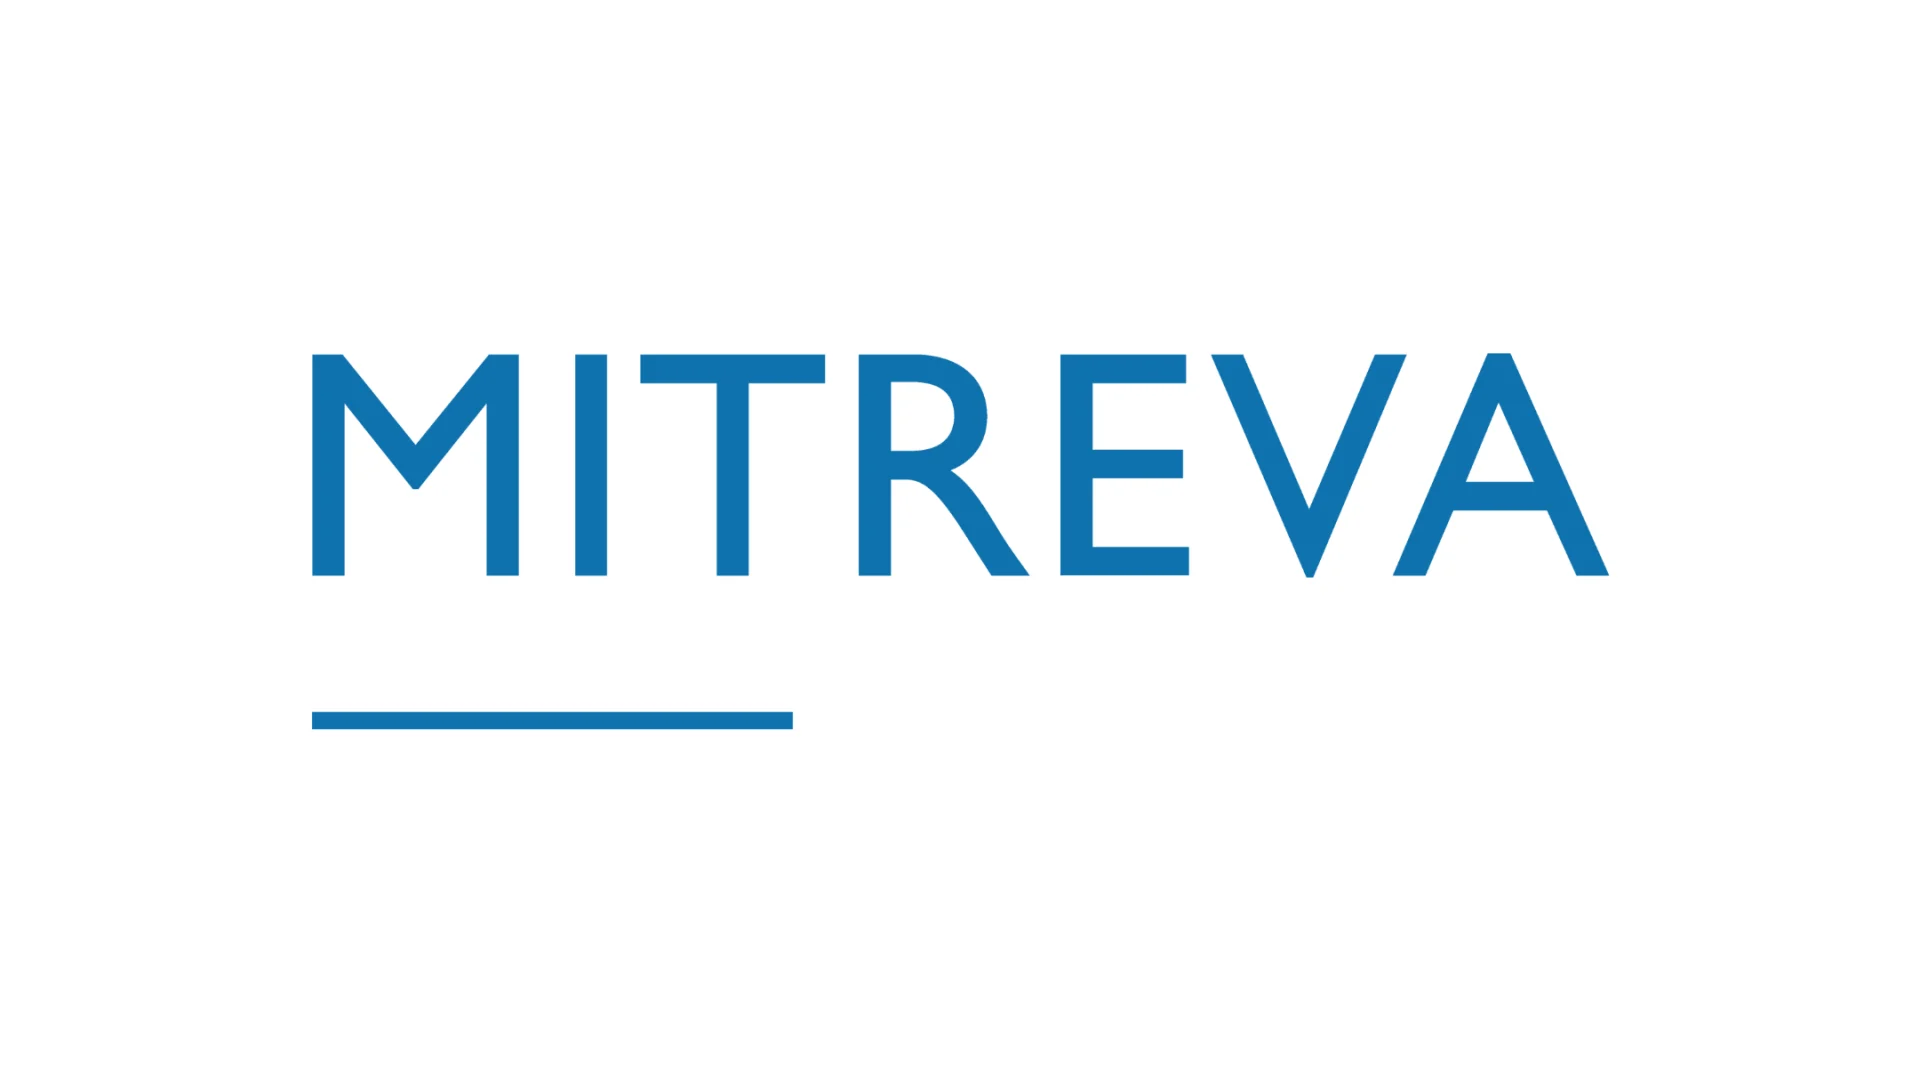 Logo der Unternehmung Mitreva. Blaue Buchstaben auf weissem Hintergrund